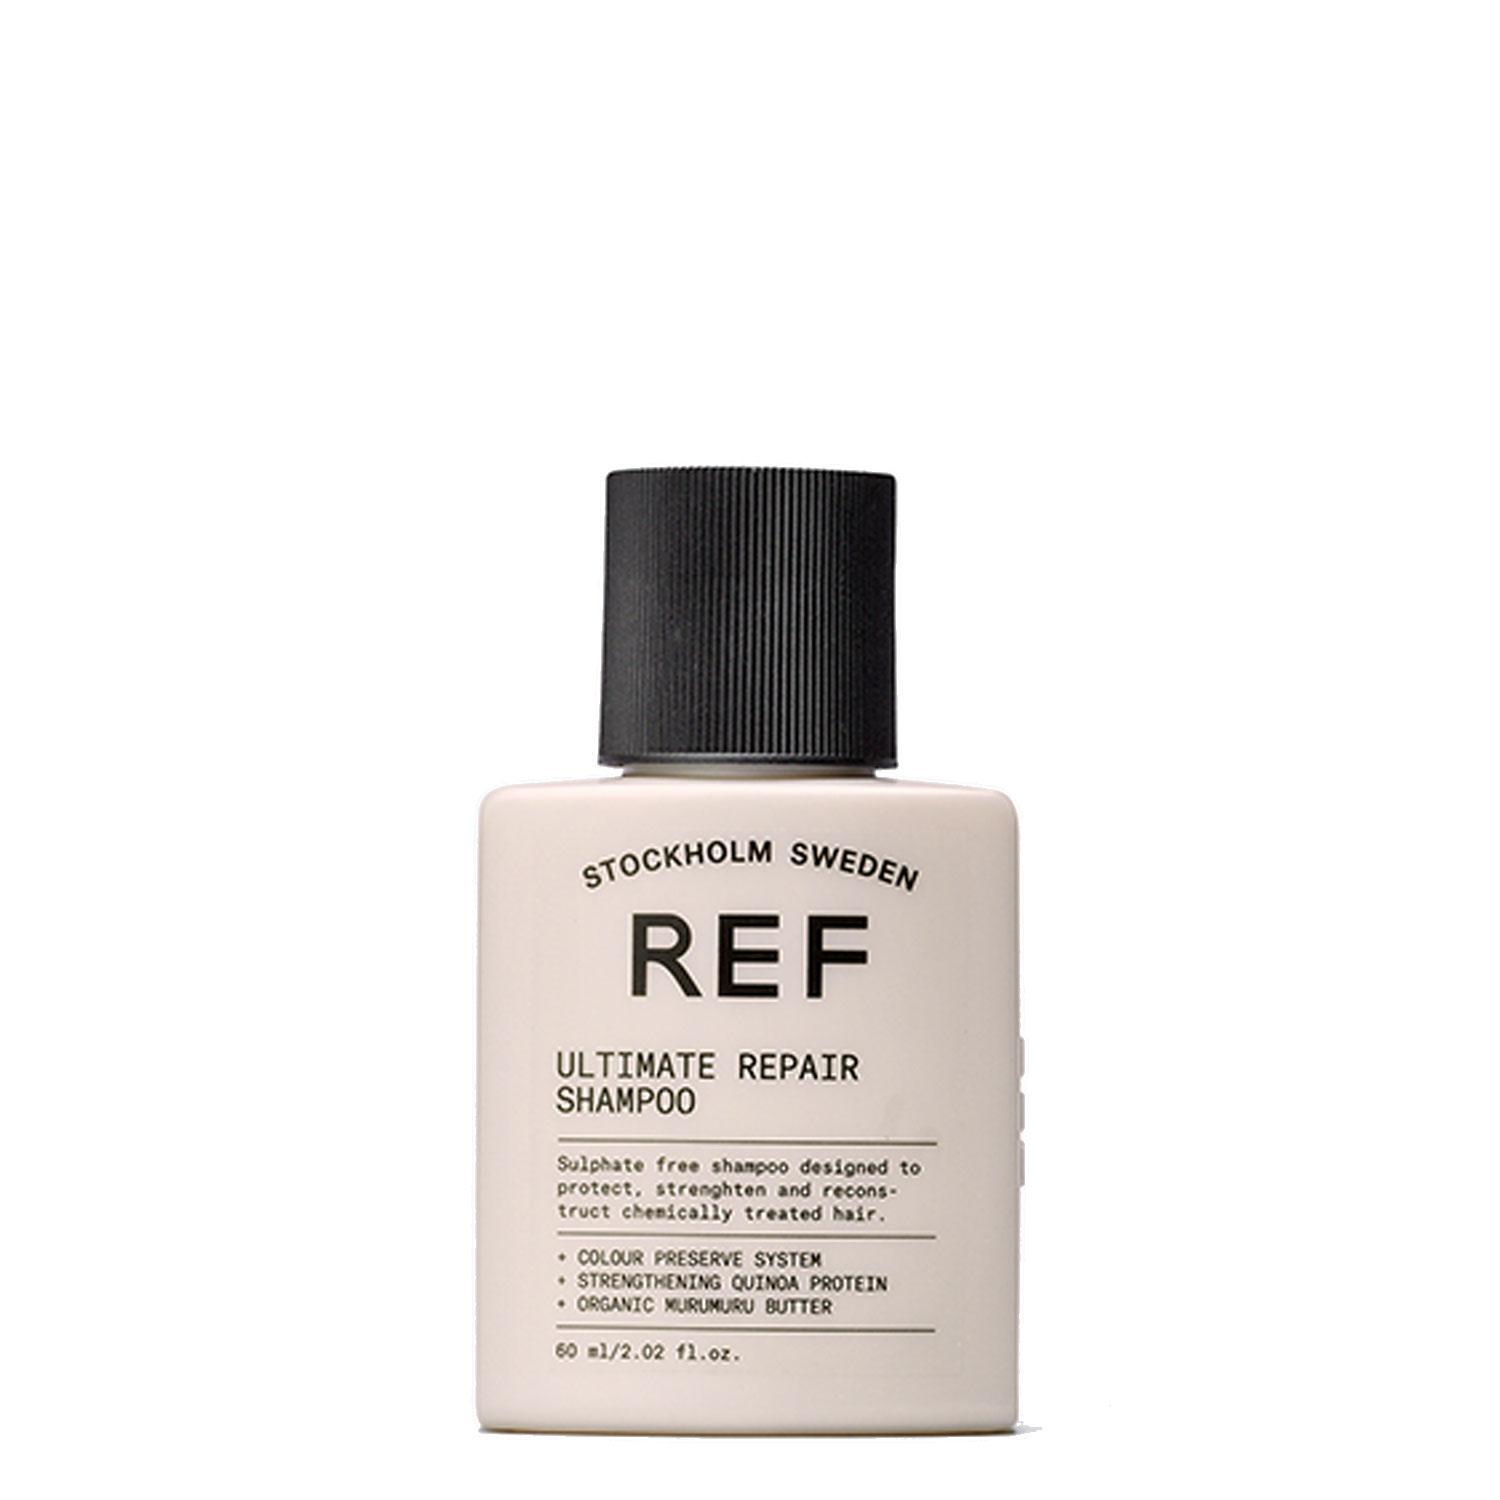 REF Shampoo - Ultimate Repair Shampoo